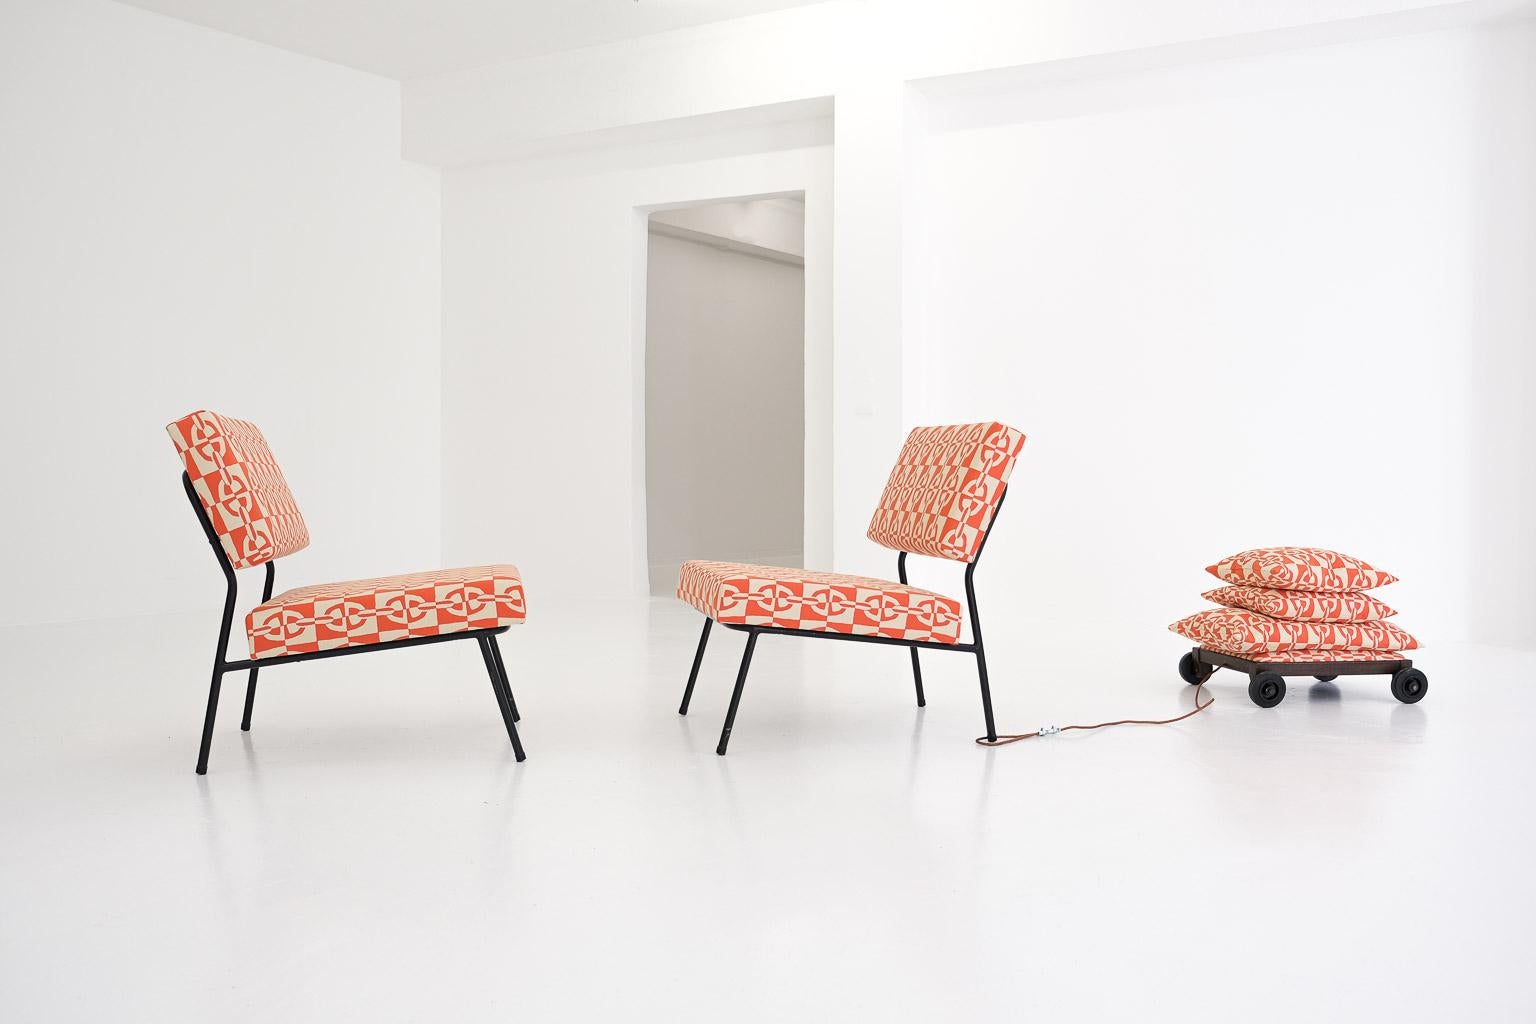 Vous connaissez peut-être ces fauteuils faciles conçus par Paul Geoffroy au début des années 1950 pour Airborne, en France. Mais vous n'avez jamais vu de tissu Hermès sur ces chaises : nous avons décidé d'opter pour le luxe intégral. Avec des